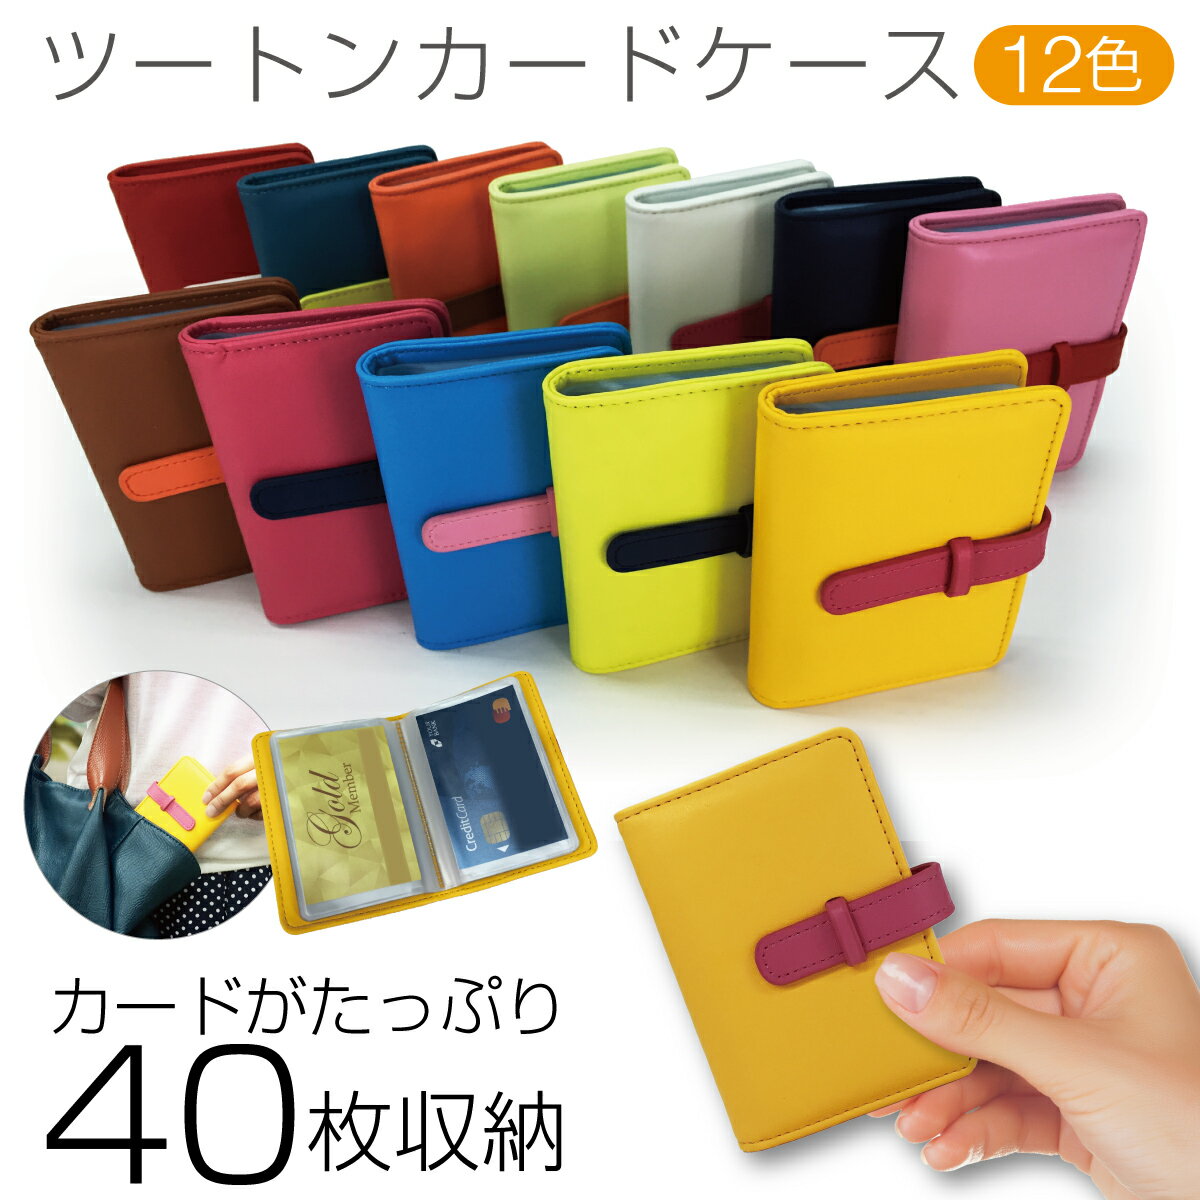 カードケース 40枚以上収納 ポイントカード クレジットカード レザー かわいい レディース 大容量 じゃばら メンズ cardcase-01